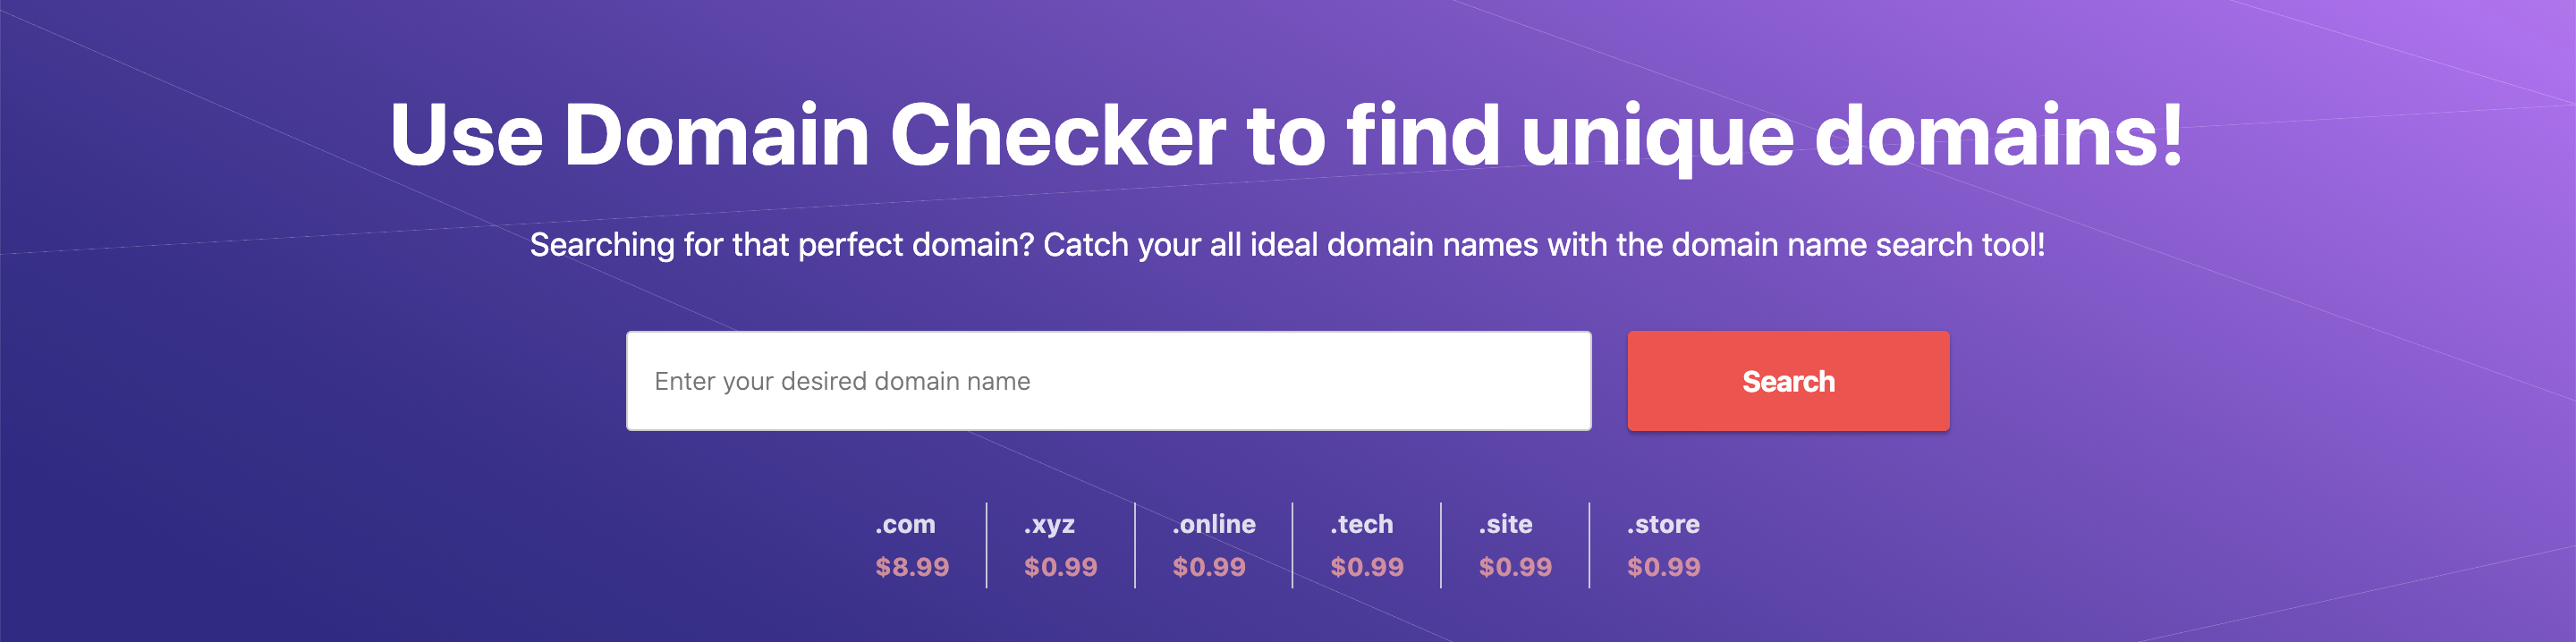 Hostinger Domain Checker frontpage.